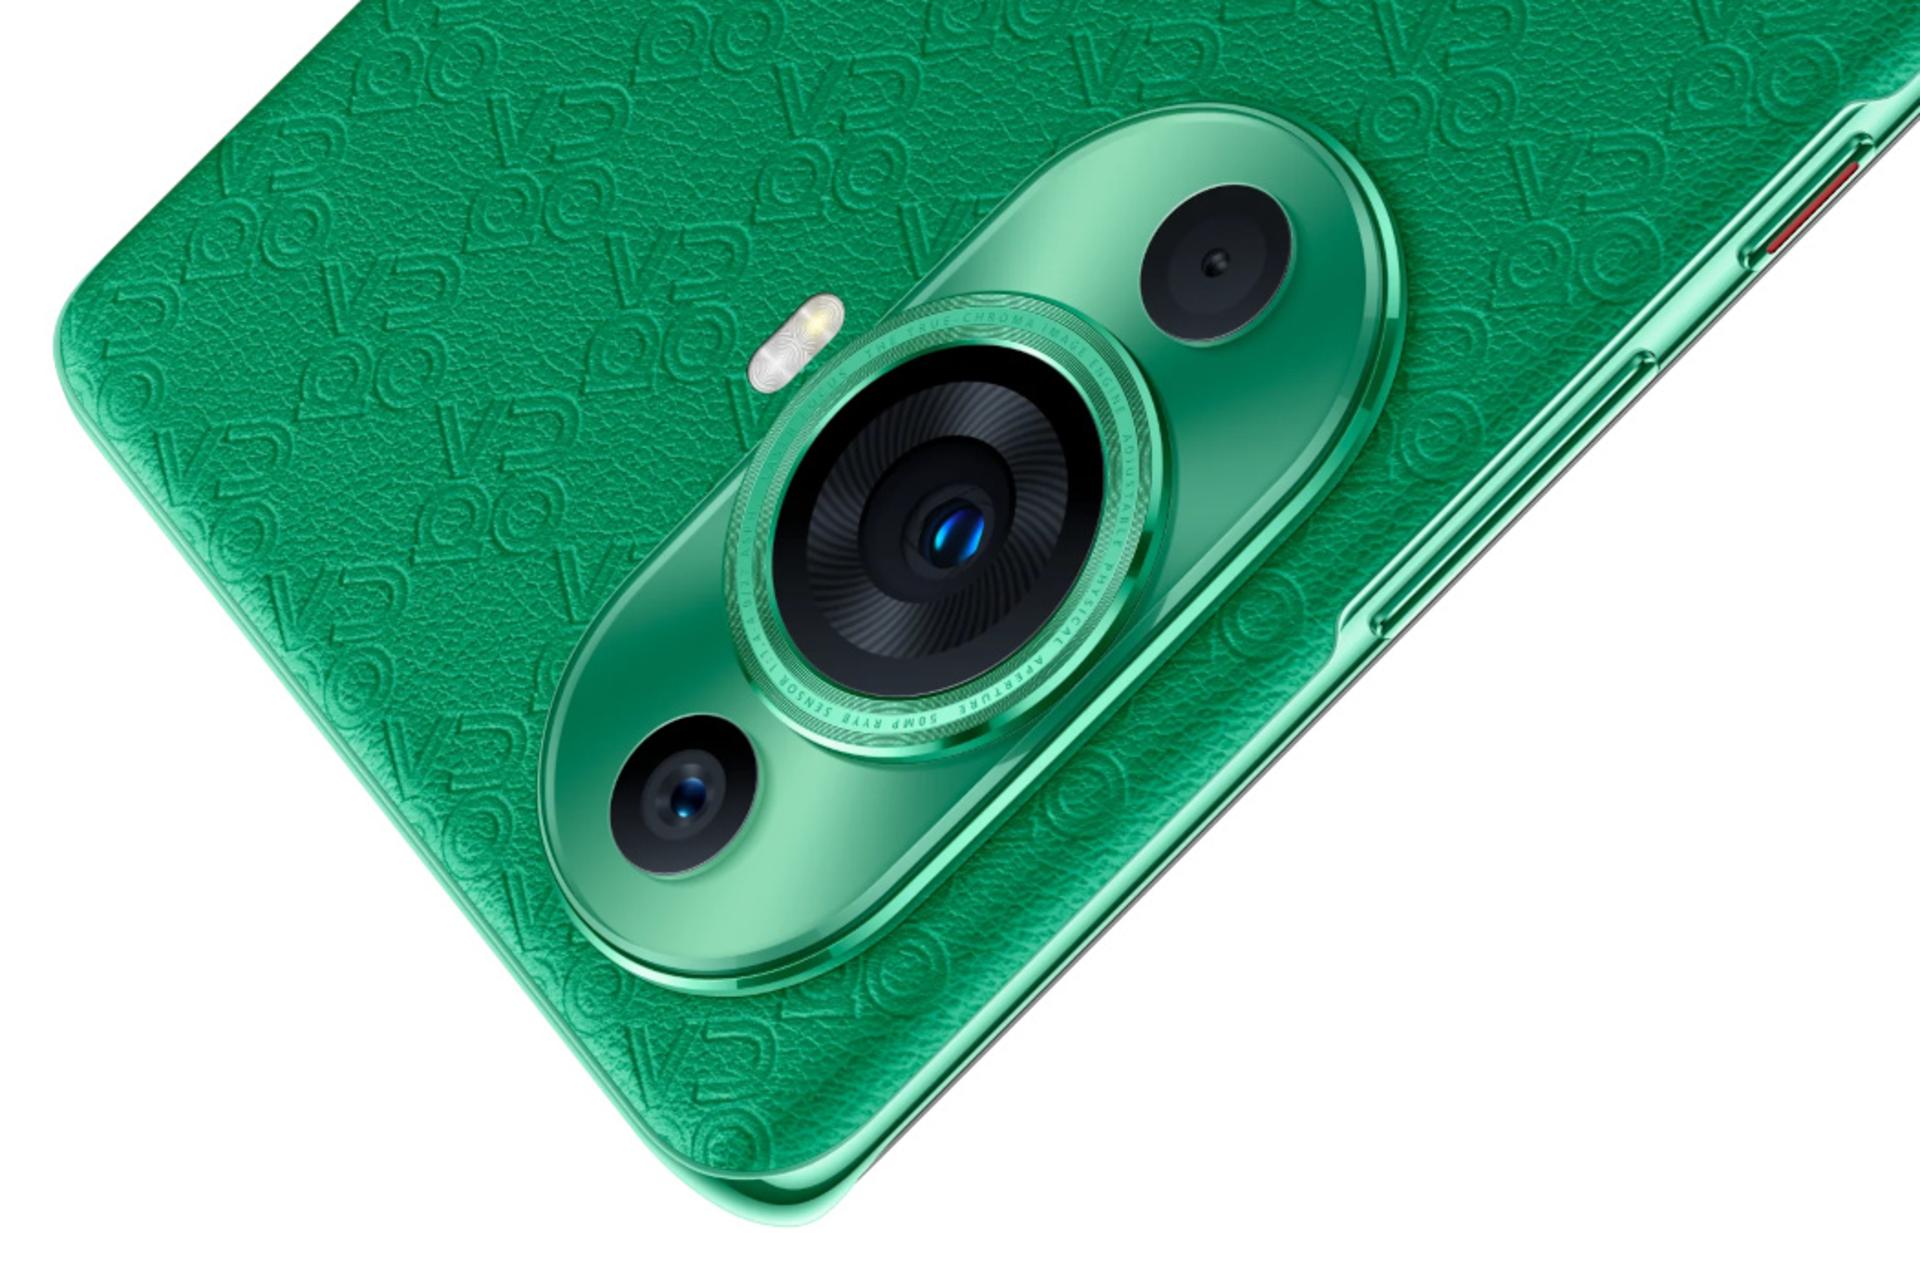 دوربین گوشی موبایل نوا 11 اولترا هواوی / Huawei nova 11 Ultra سبز